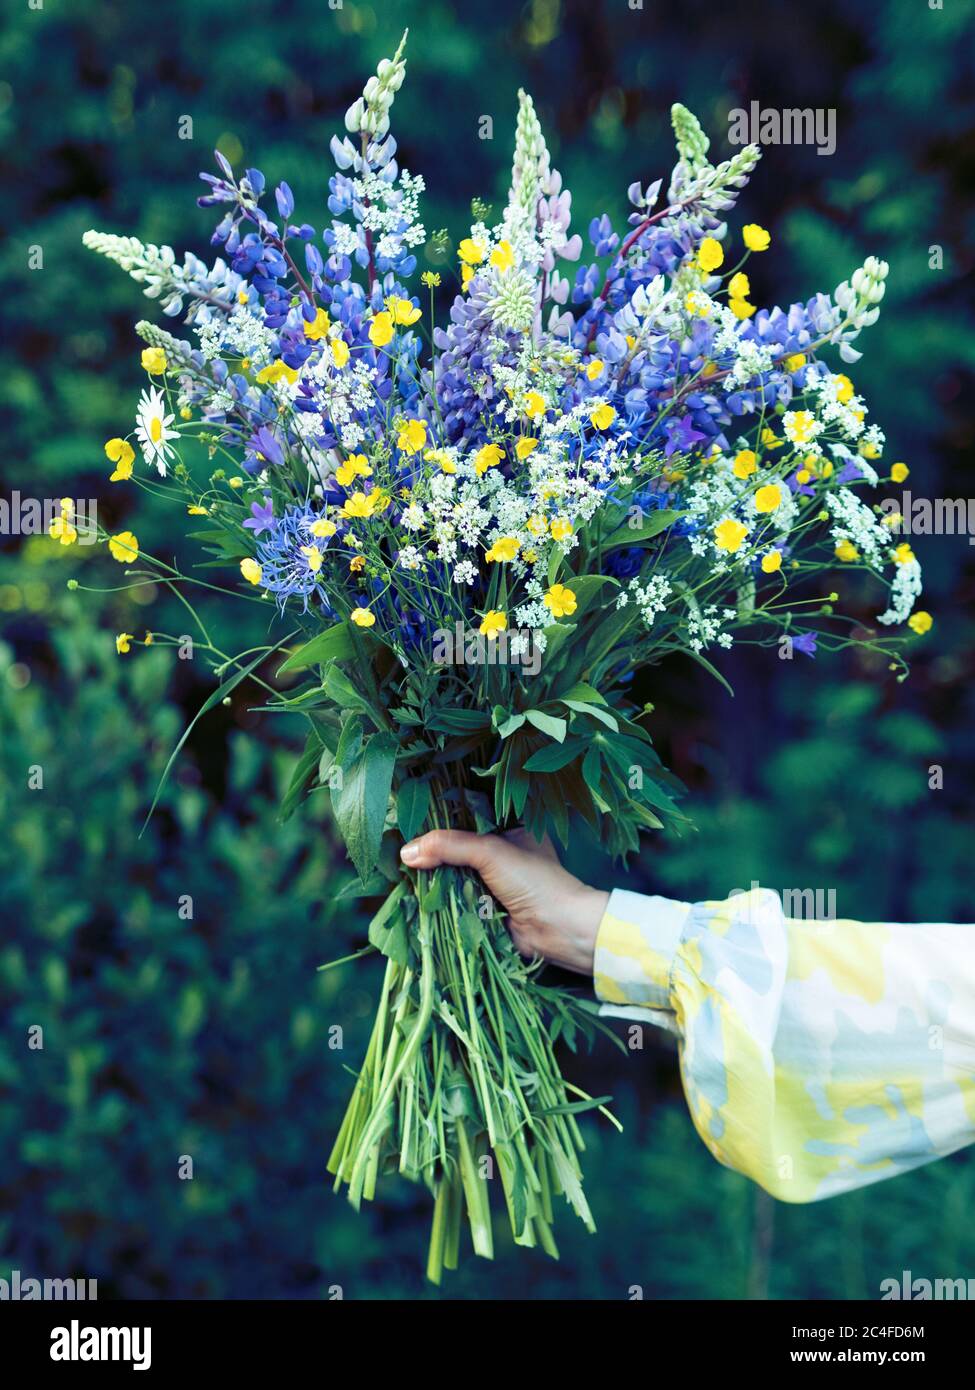 Beau grand bouquet de fleurs sauvages dans une main, sans visage de personnes. Fleurs de lupins en fleurs dans les mains des femmes. Fleurs en cadeau. Banque D'Images